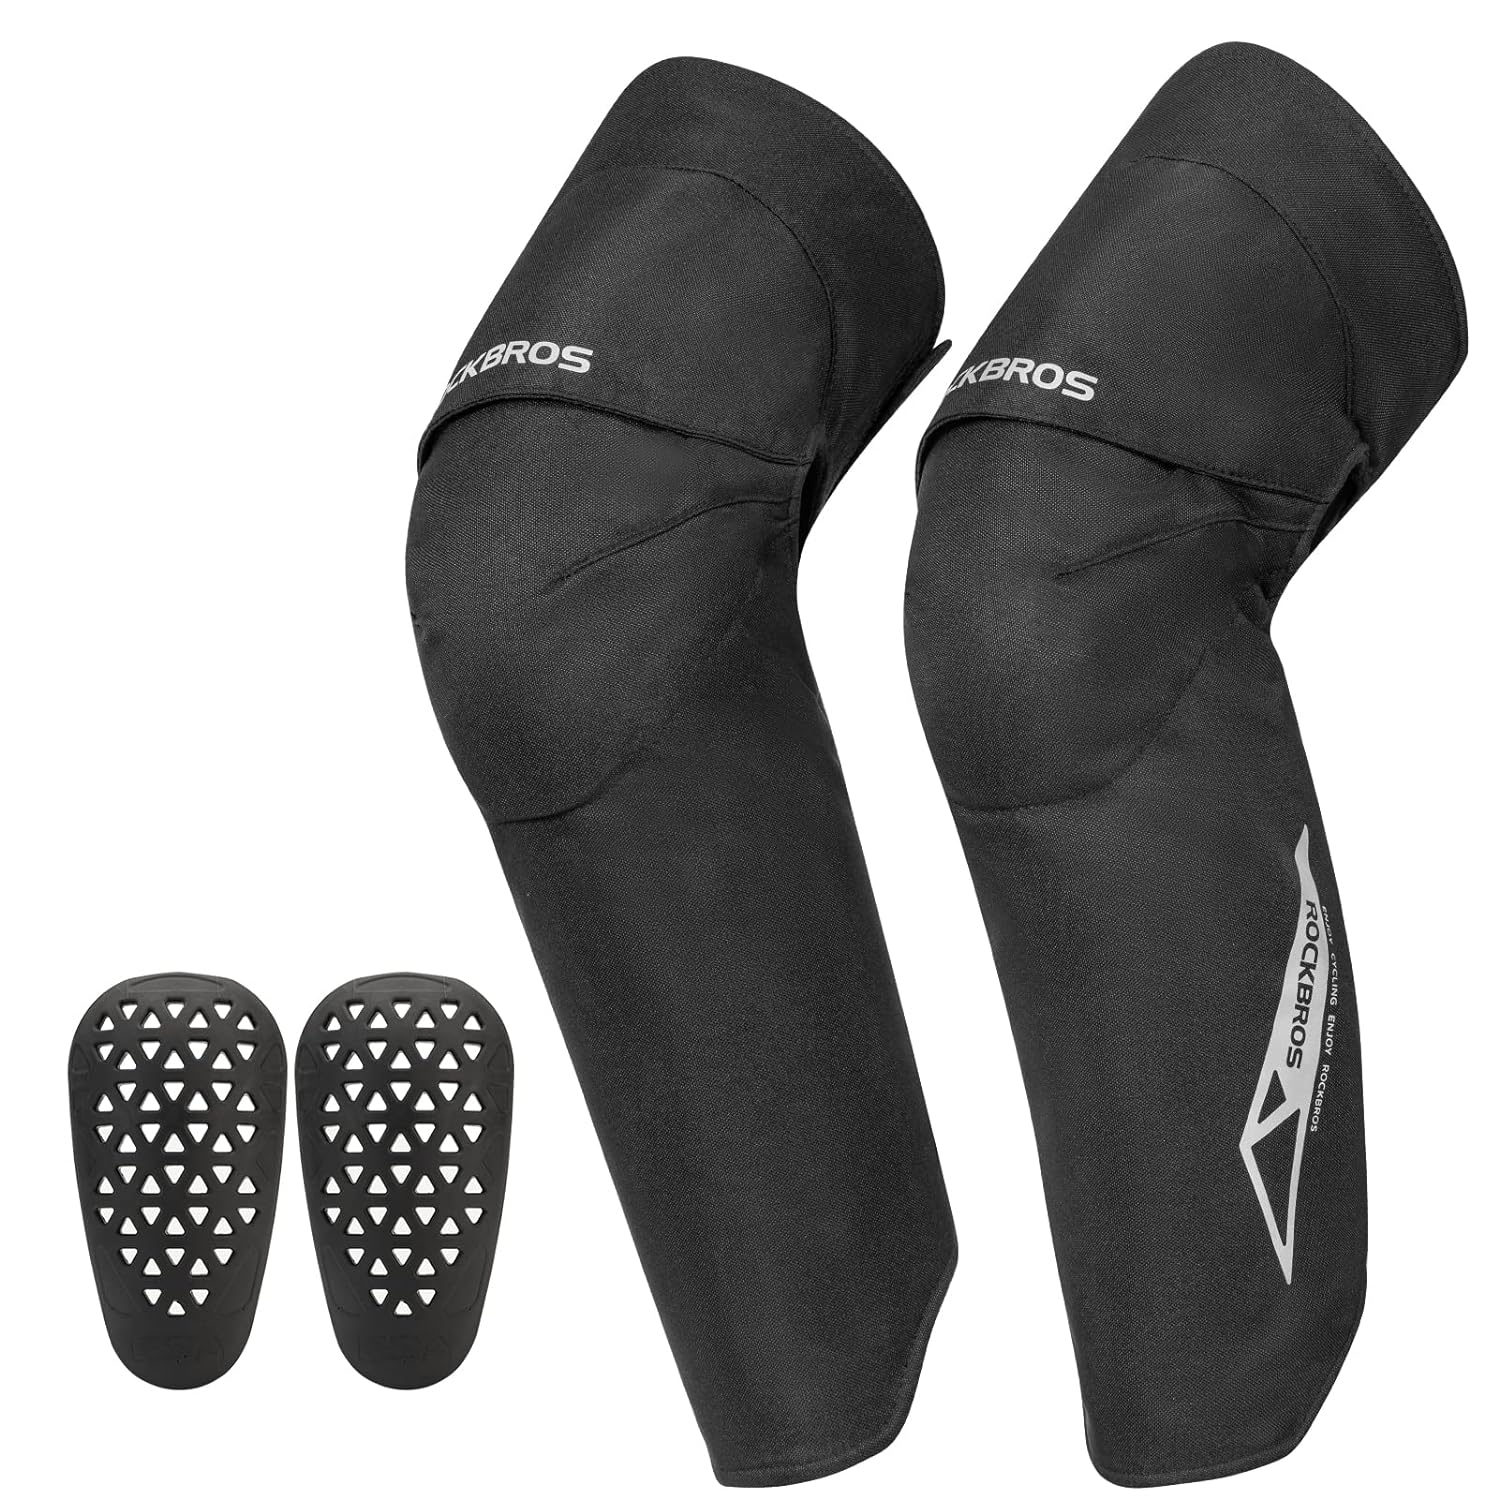 Cycling Legwarmer Bike Bicycle Knee Warm Leg Sleeves Covers Windproof Leg Cover 